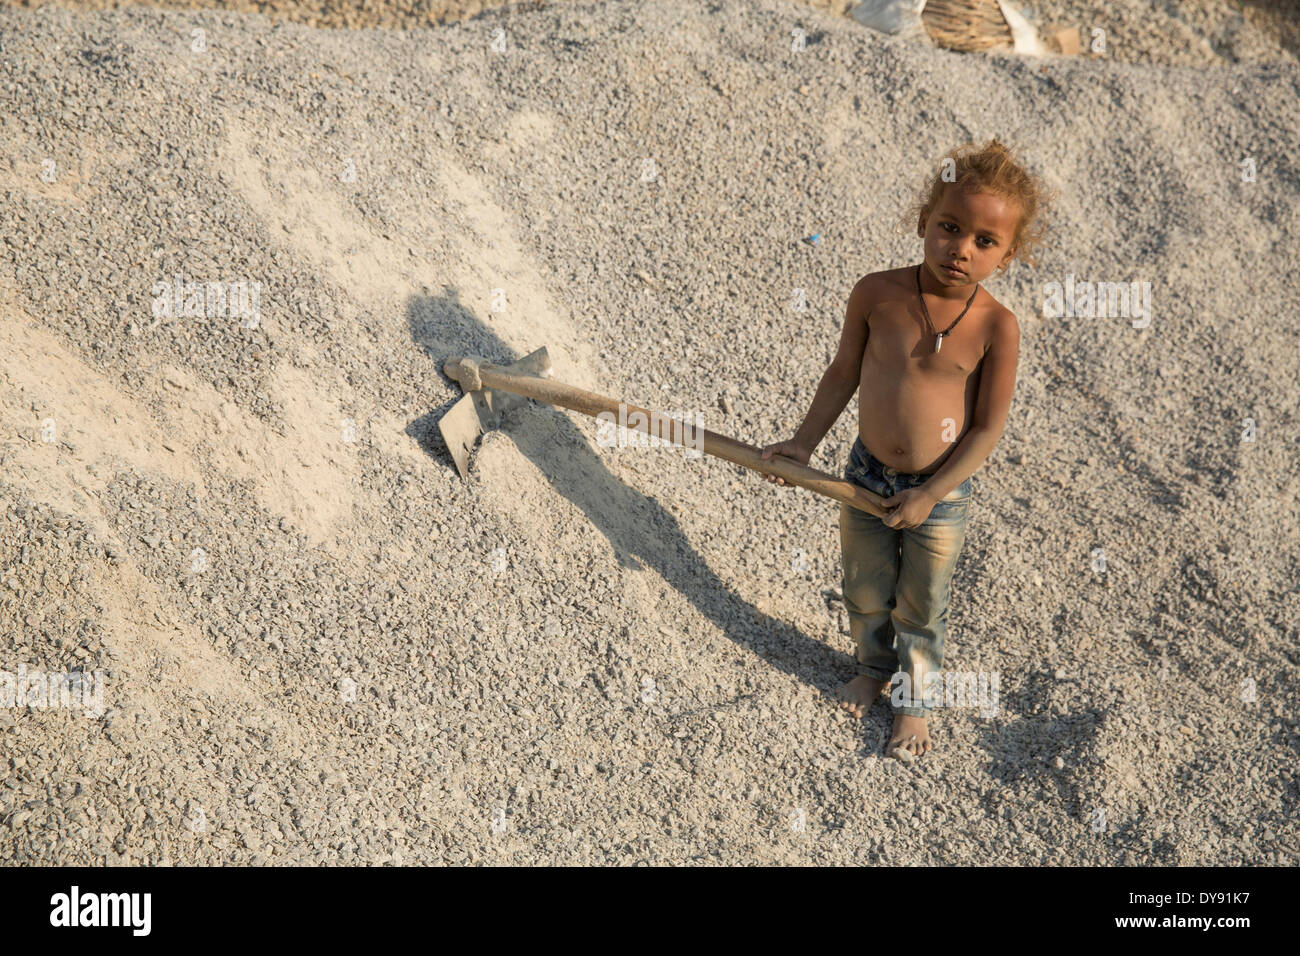 Lavoro minorile, Asia, India, bambino, pala, ghiaia Foto Stock